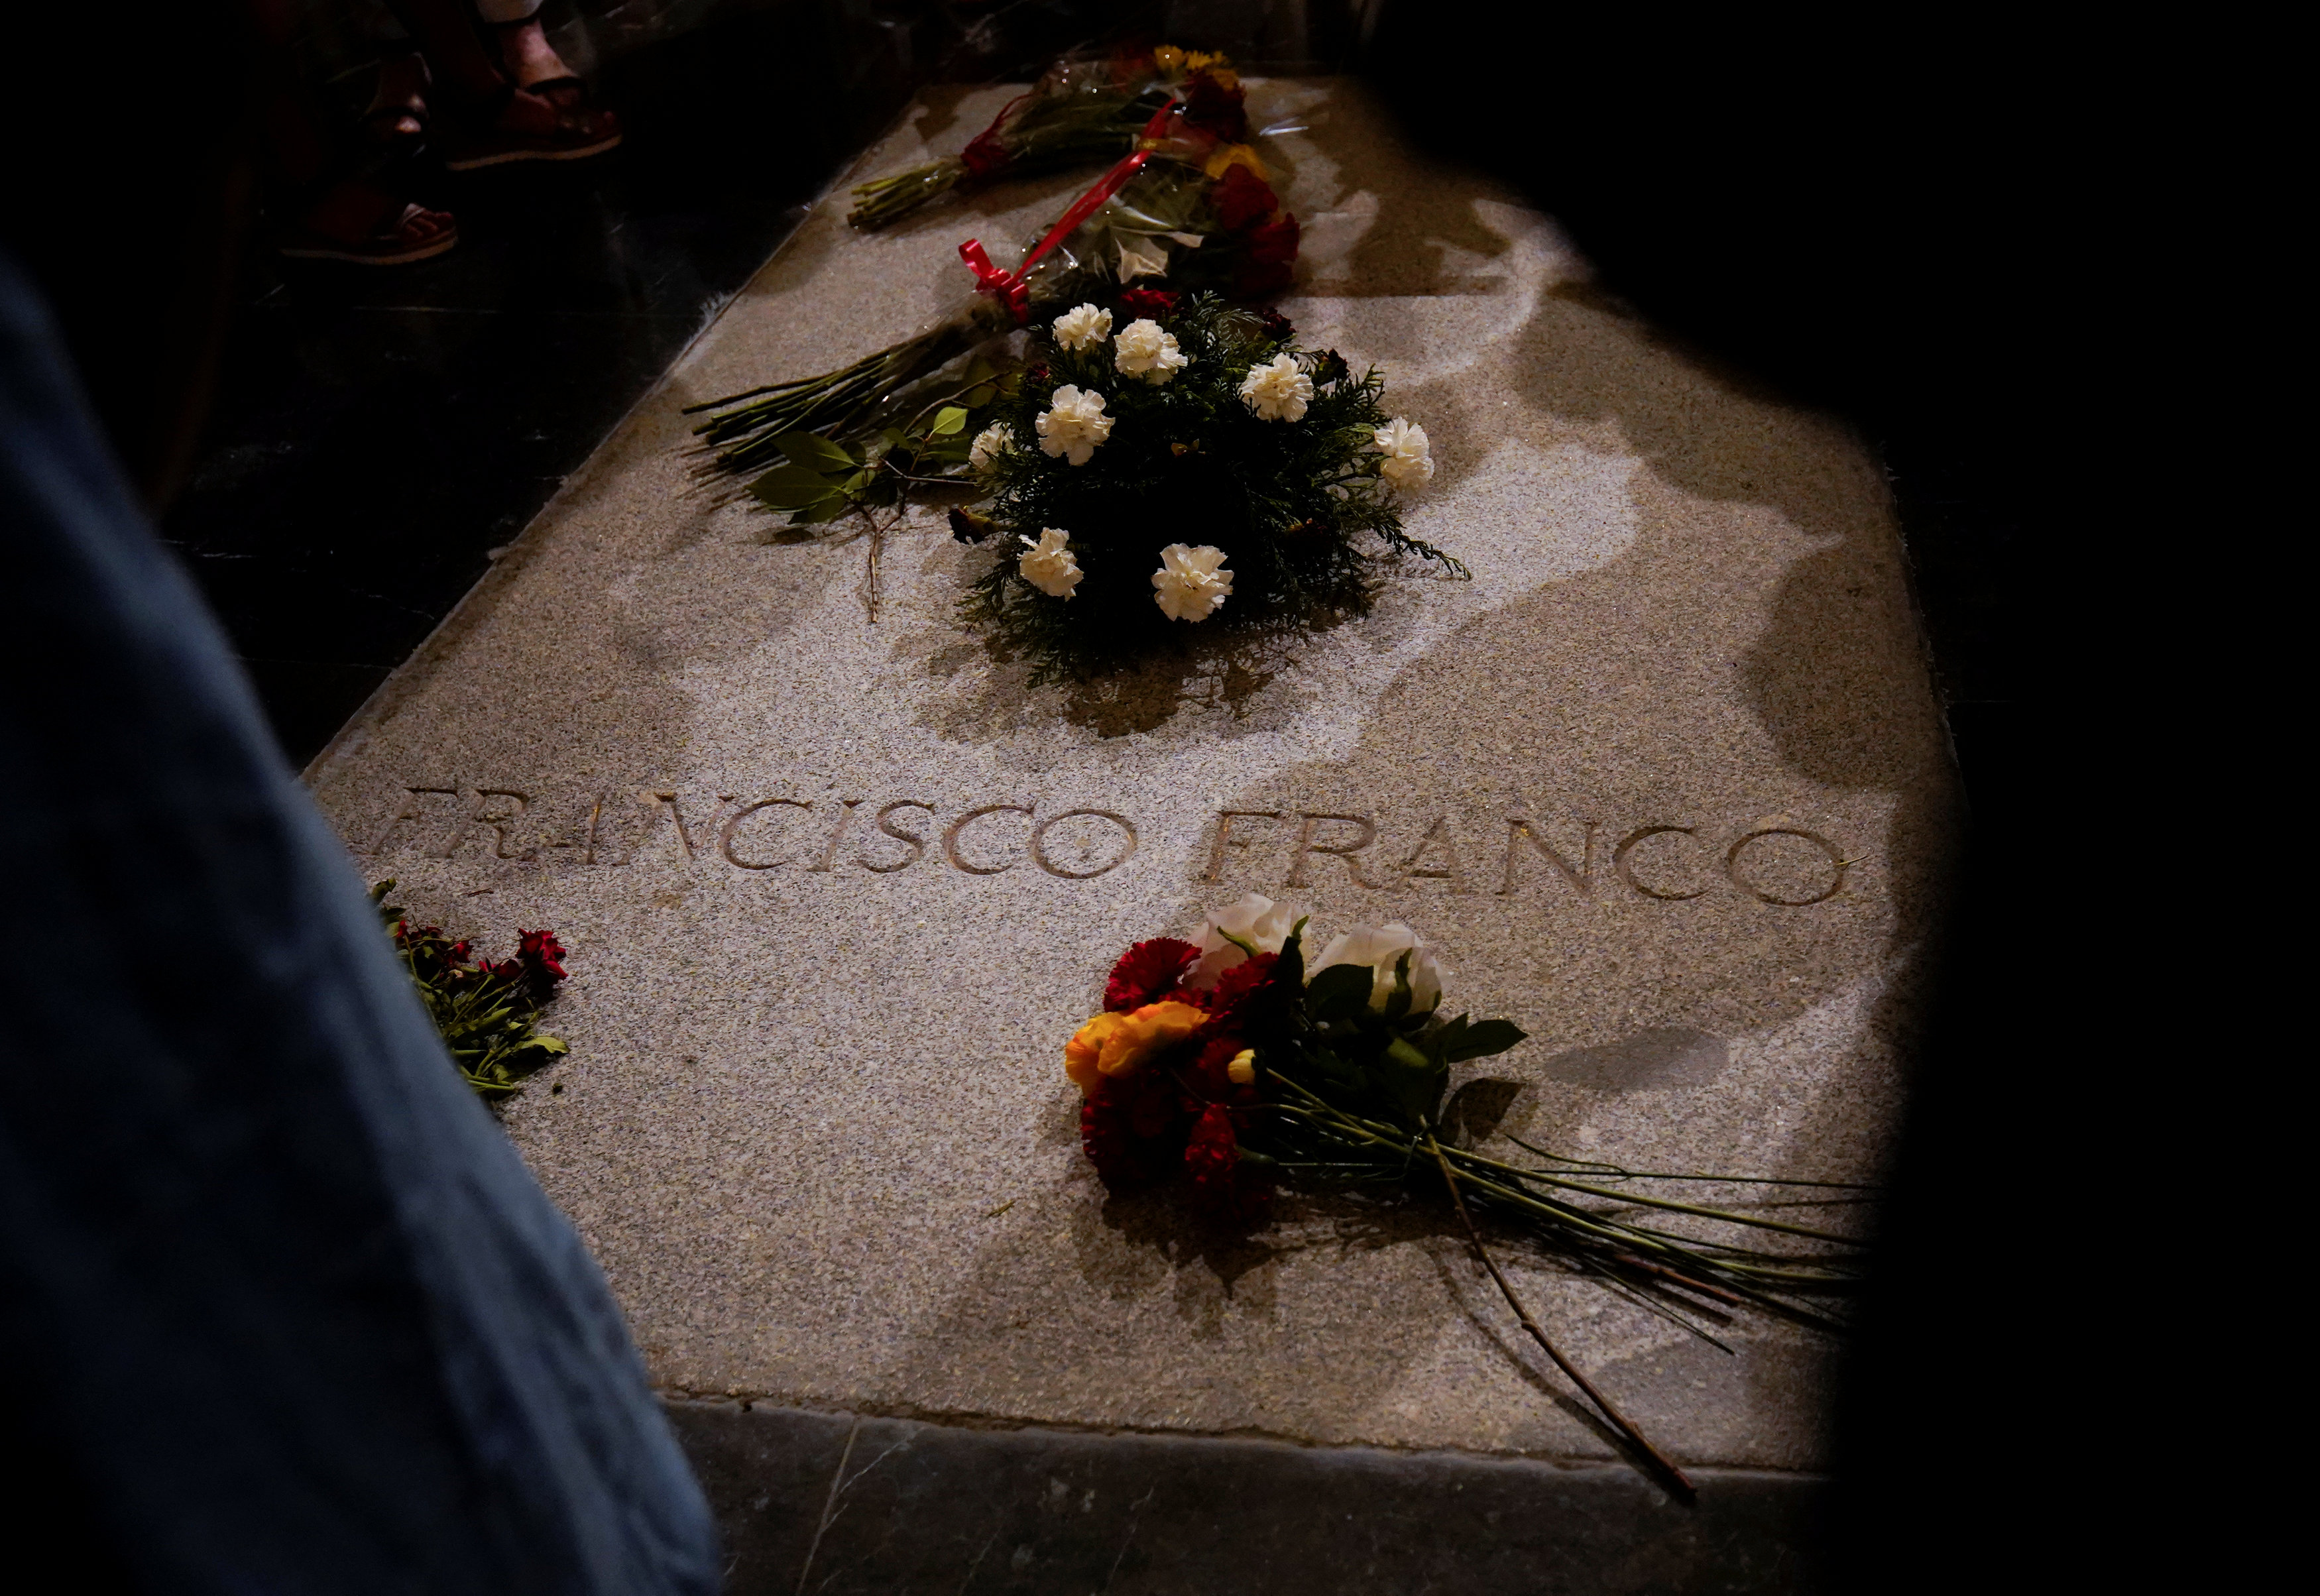 La Justicia española decide sobre la exhumación y traslado de Franco